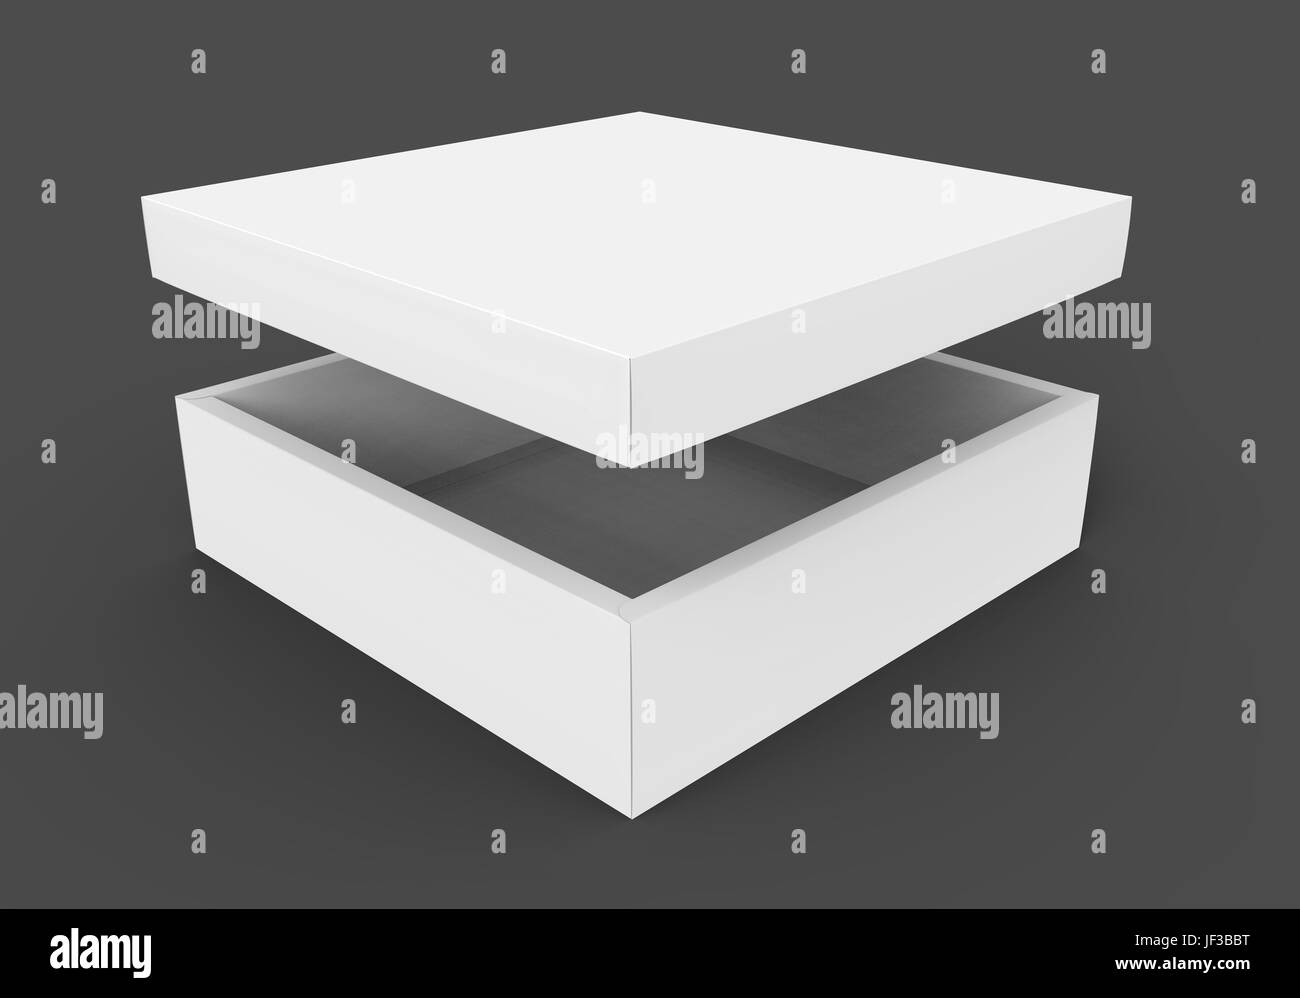 Rendu 3D télévision vierge ouvrir légèrement filé blanc vide boîte carrée avec couvercle flottant, isolé sur fond gris foncé elevated view Banque D'Images